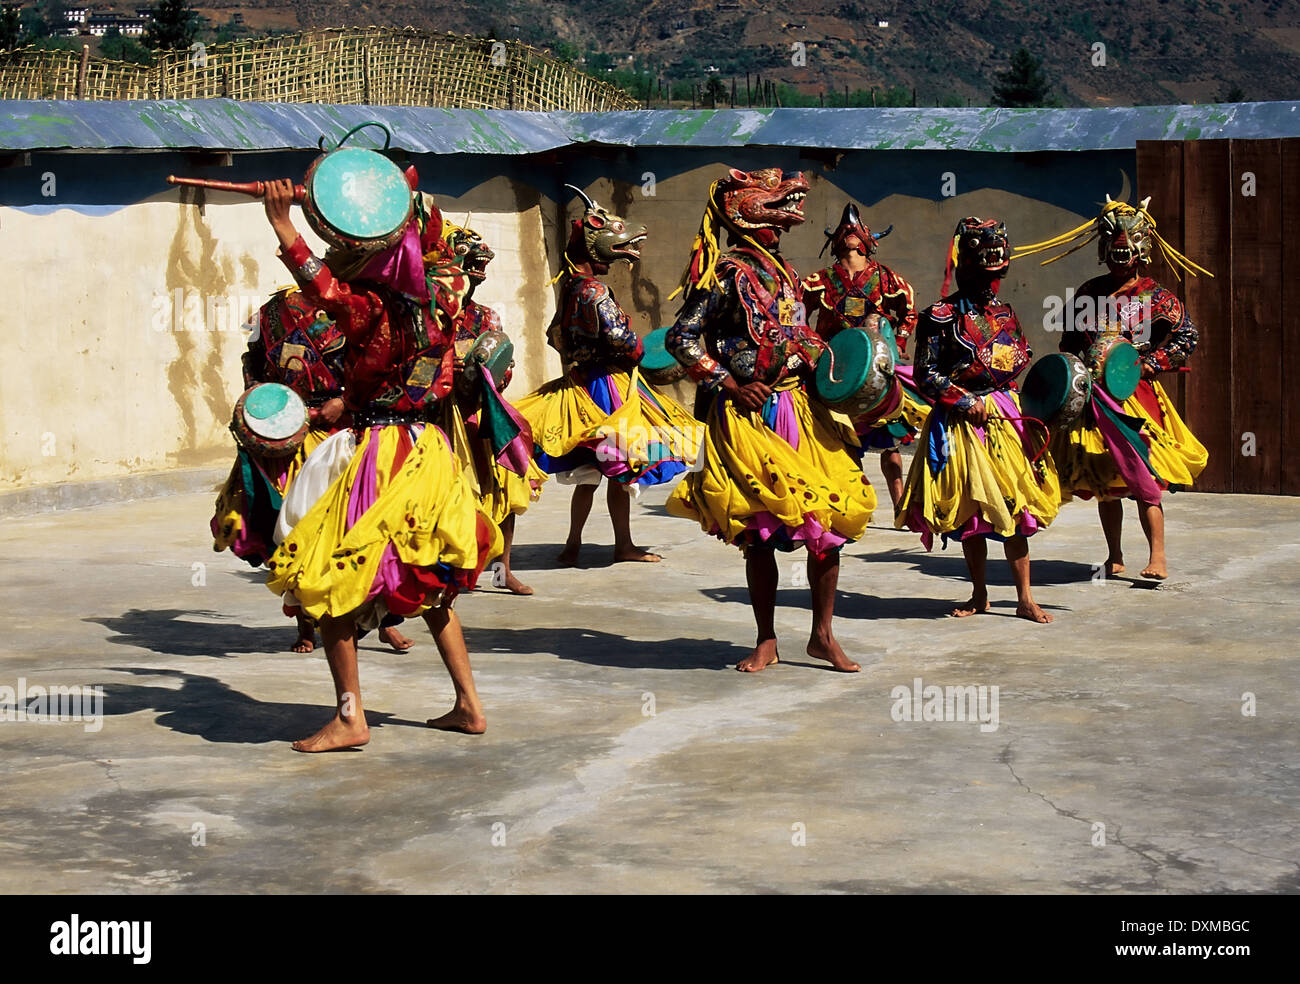 Danseurs costumés à l'affichage de danse traditionnelle à Thimpu, Bhoutan. Image manipulée numériquement Banque D'Images